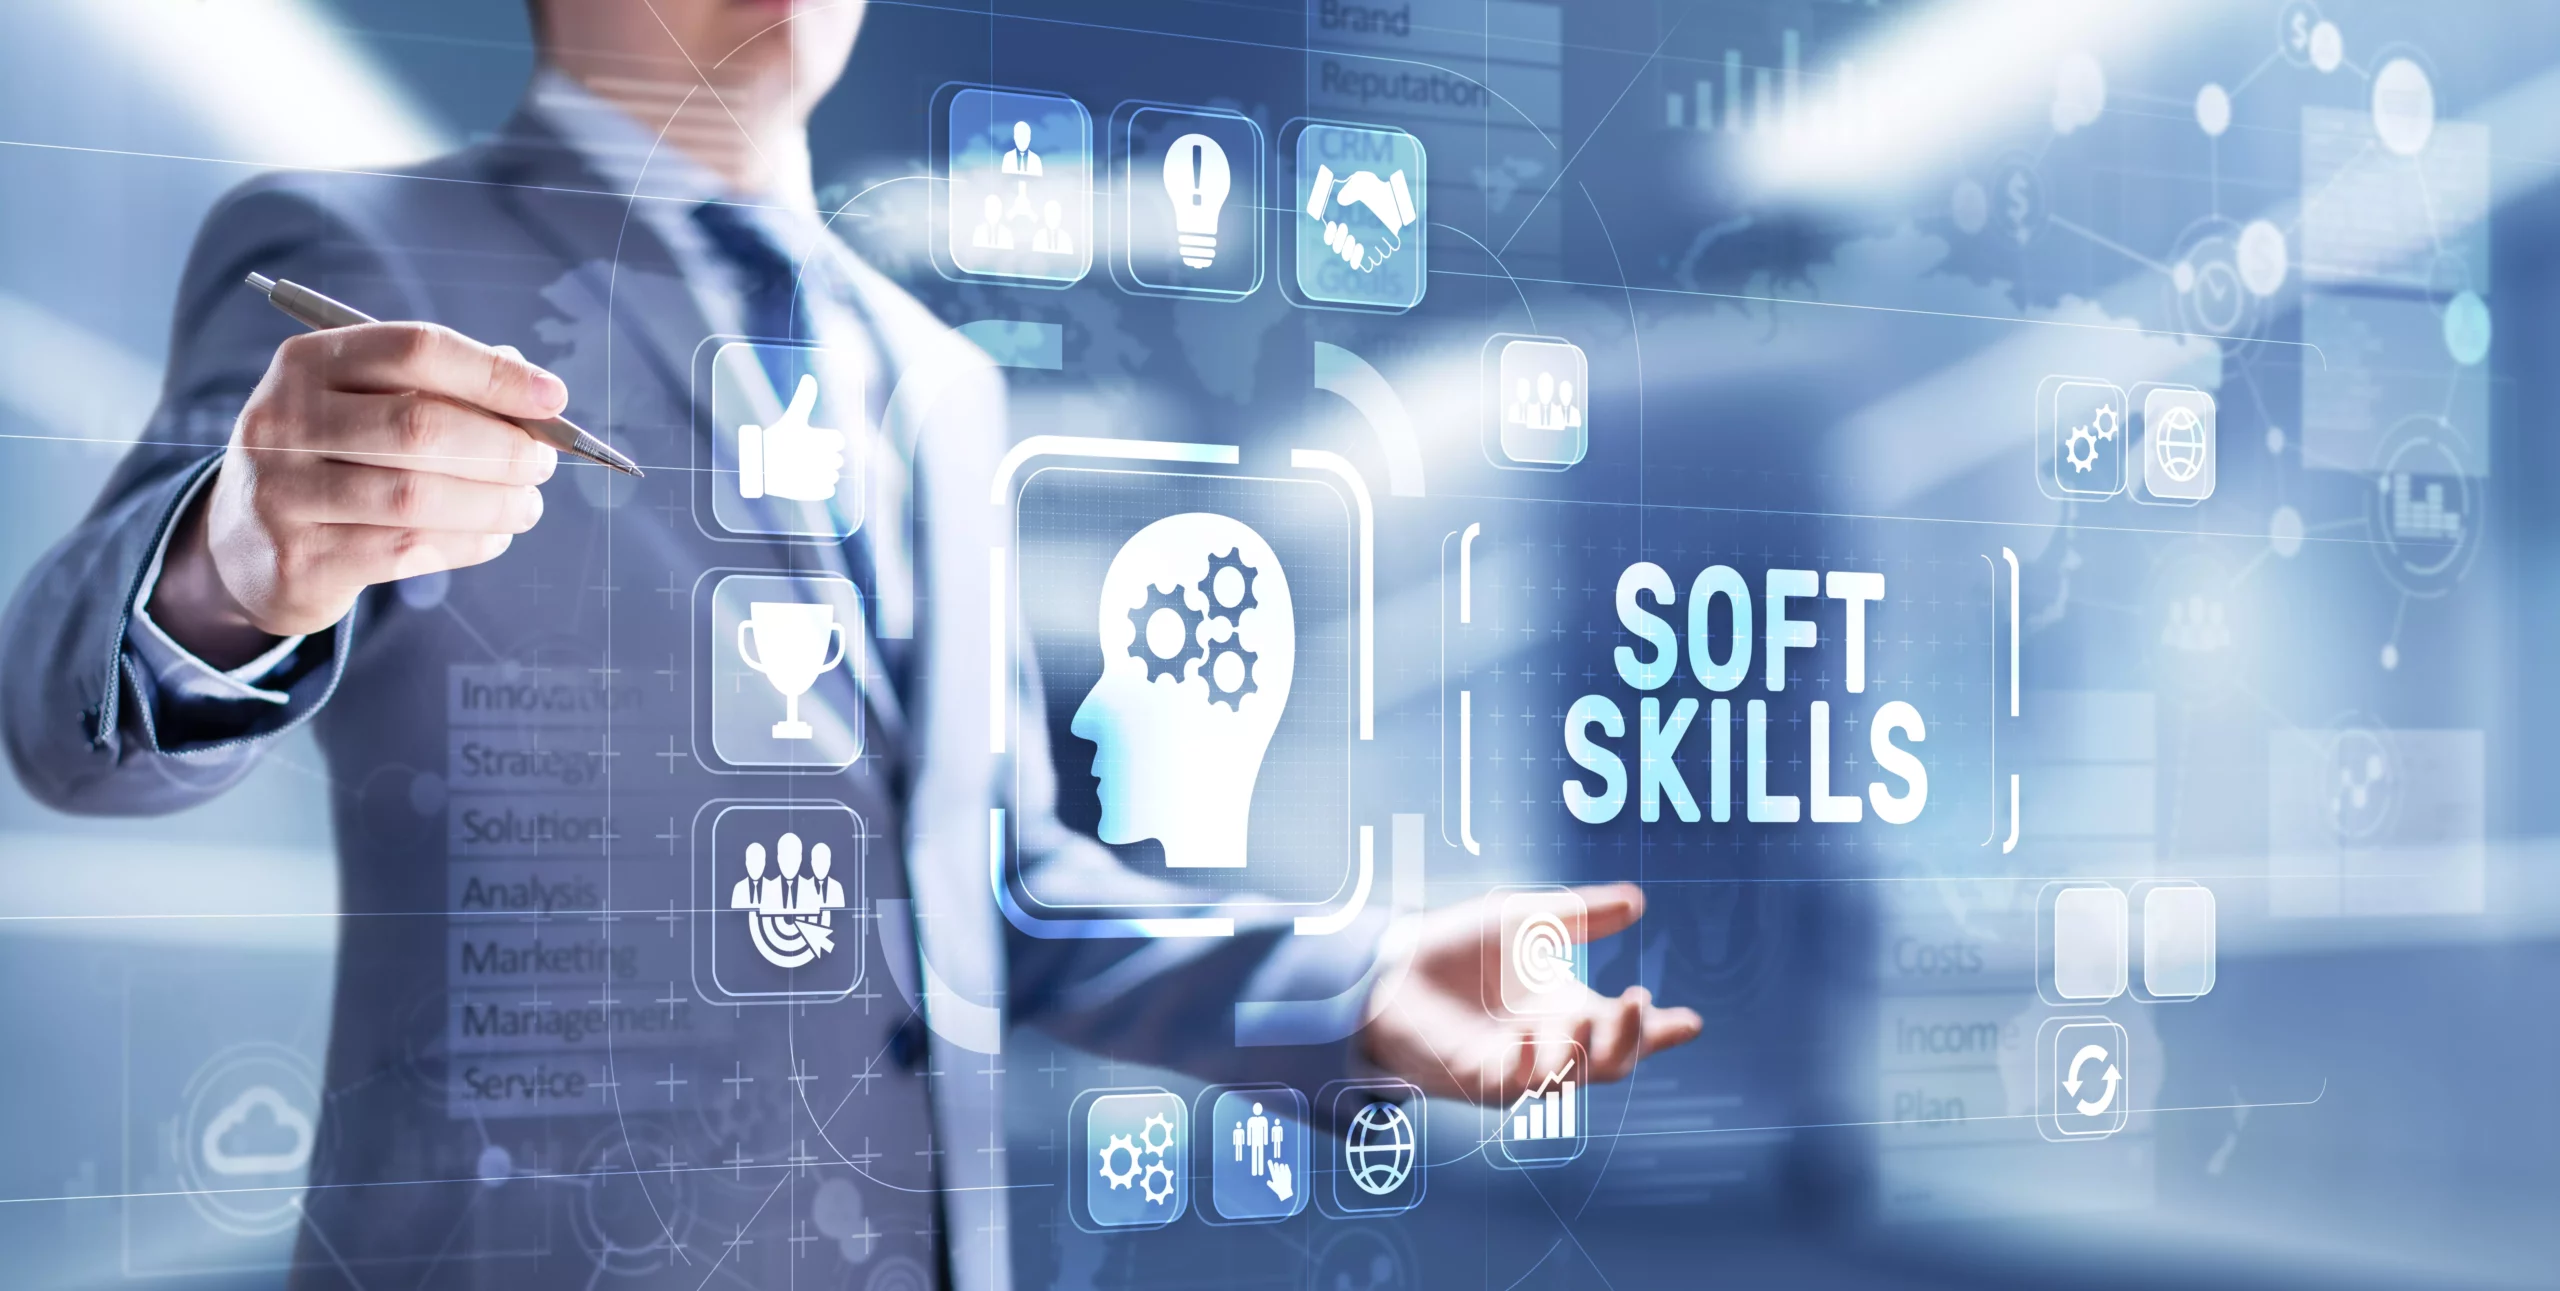 Palestra: Soft Skills como ferramentas para a gestão atual